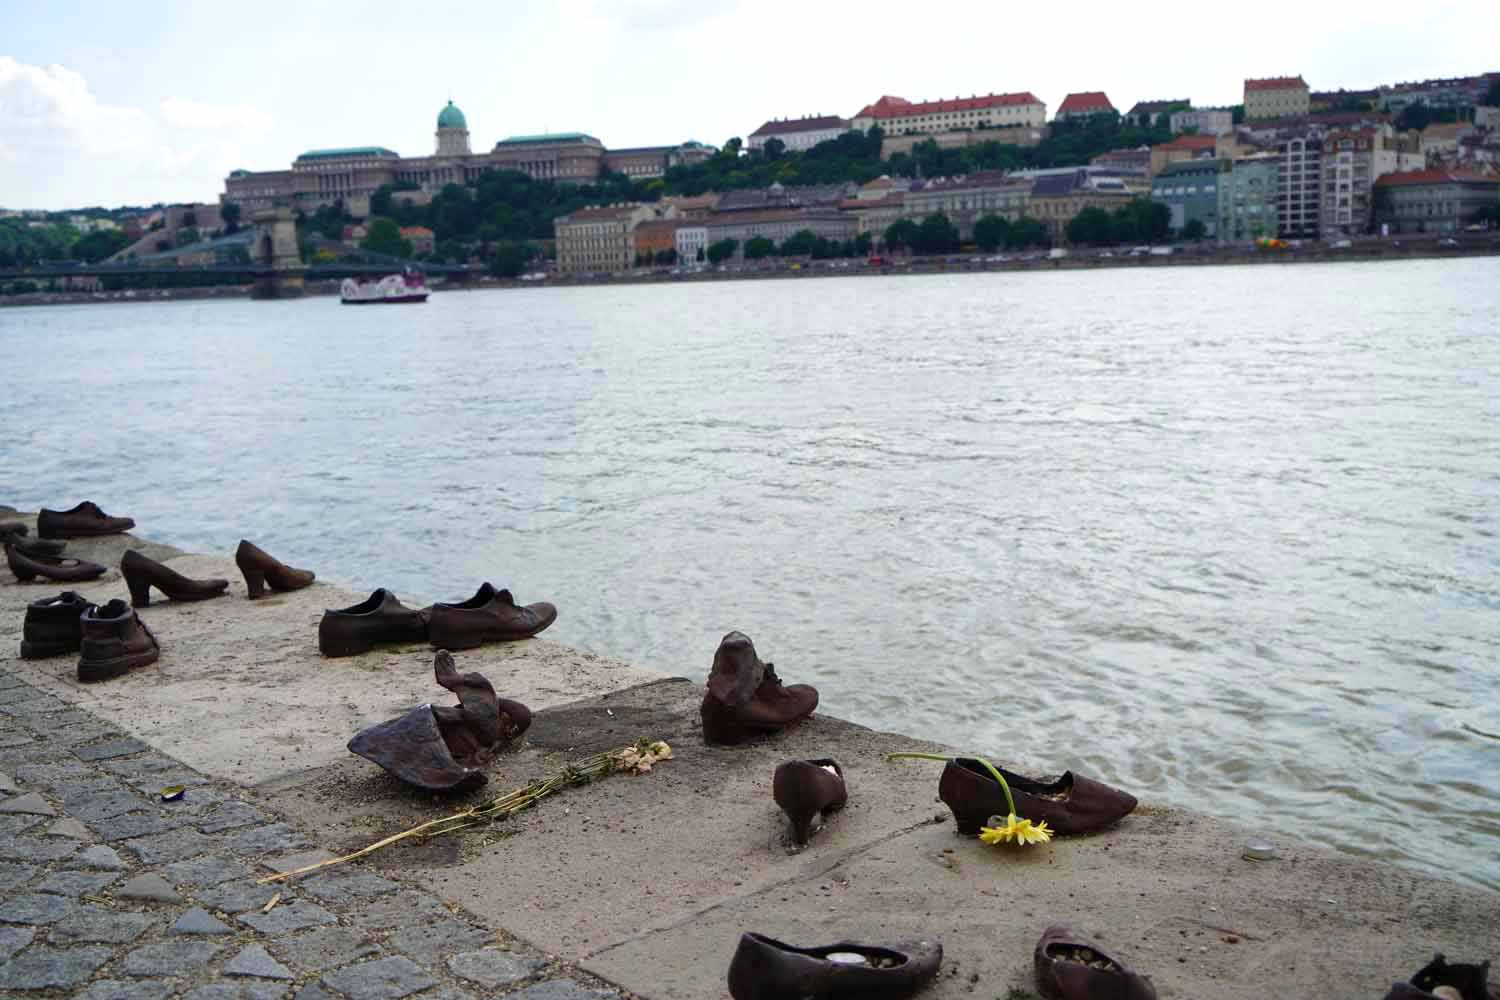 Gusseiserne Schuhe an der Donau, eine traurige Sehenswürdigkeit in Budapest
